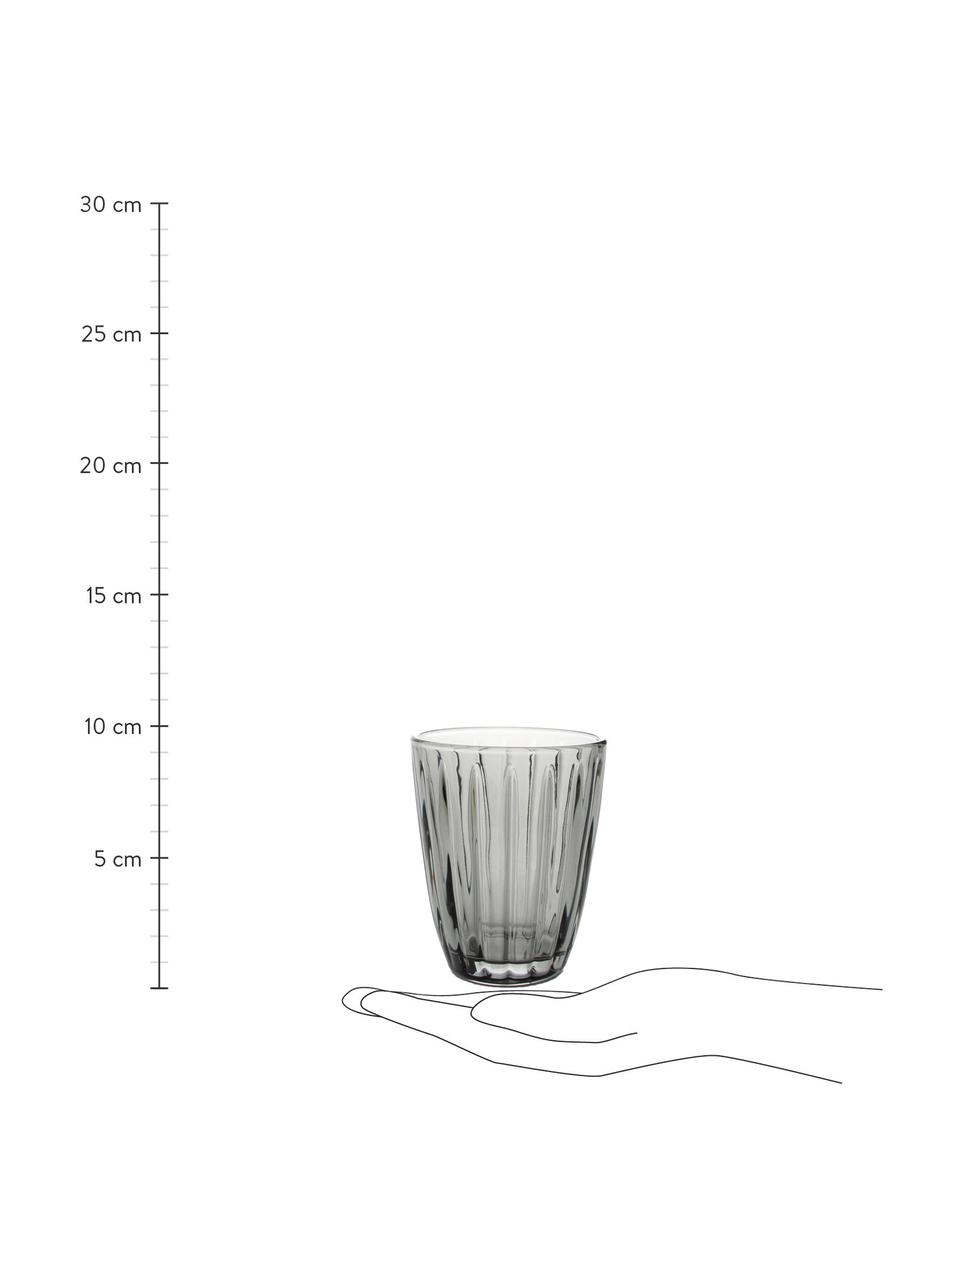 Waterglazen Zefir in grijs met reliëf, 4 stuks, Glas, Grijs, Ø 8 x H 10 cm